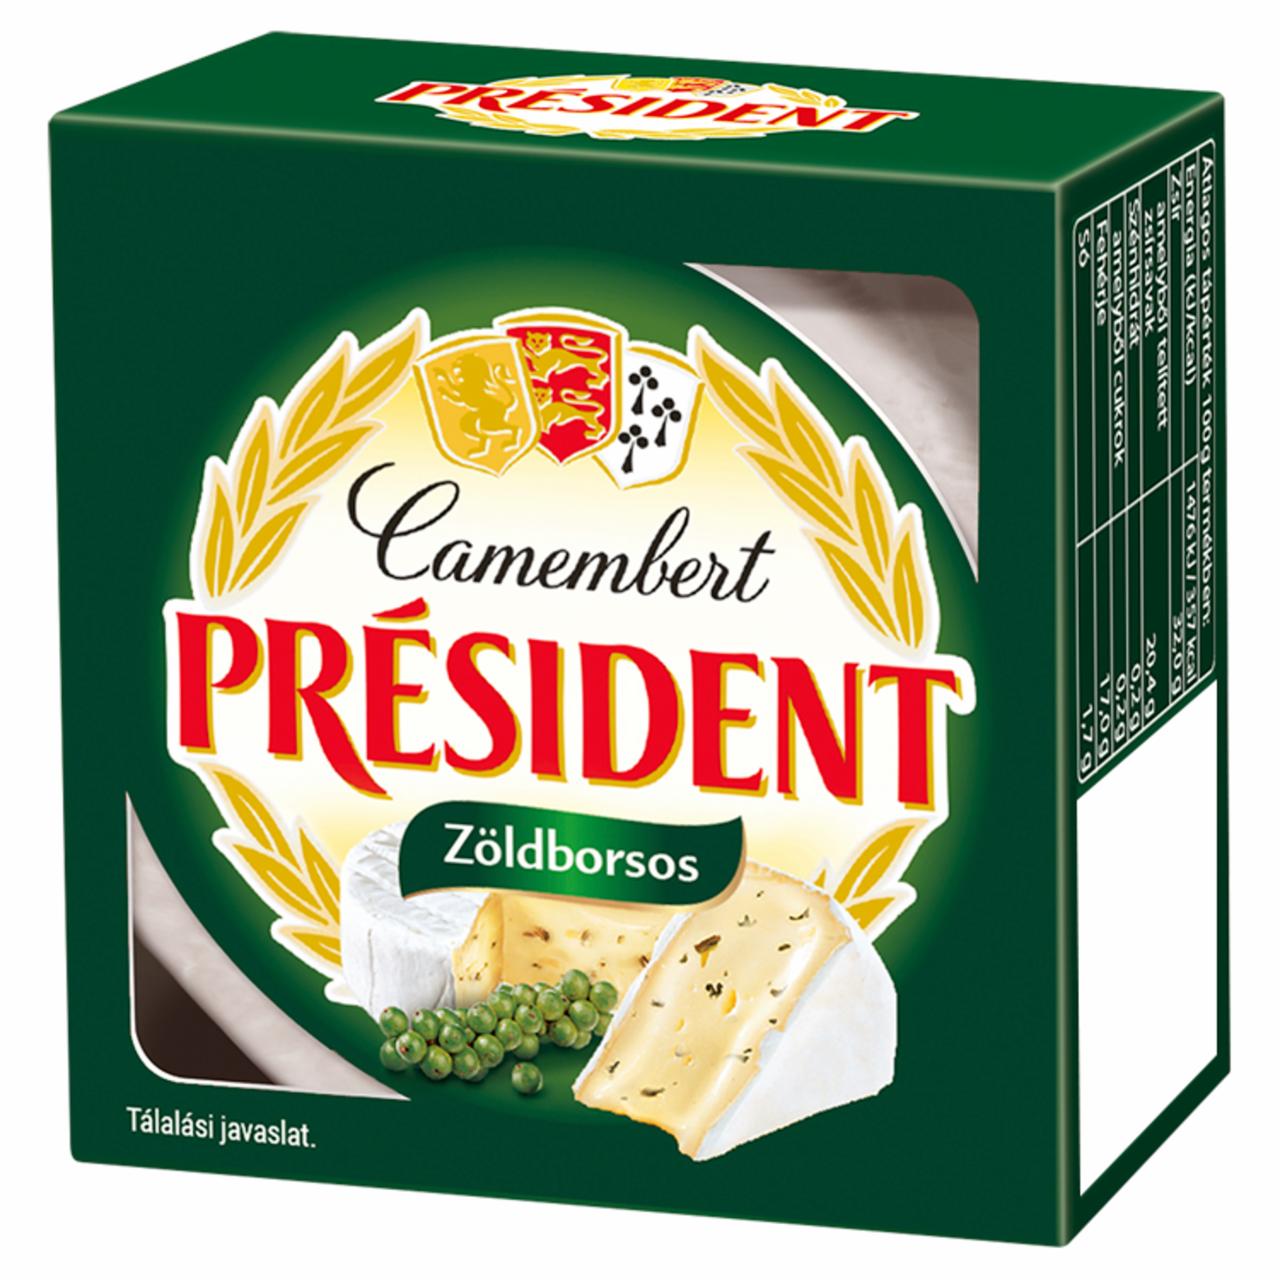 Képek - Président zöldborsos camembert sajt 90 g